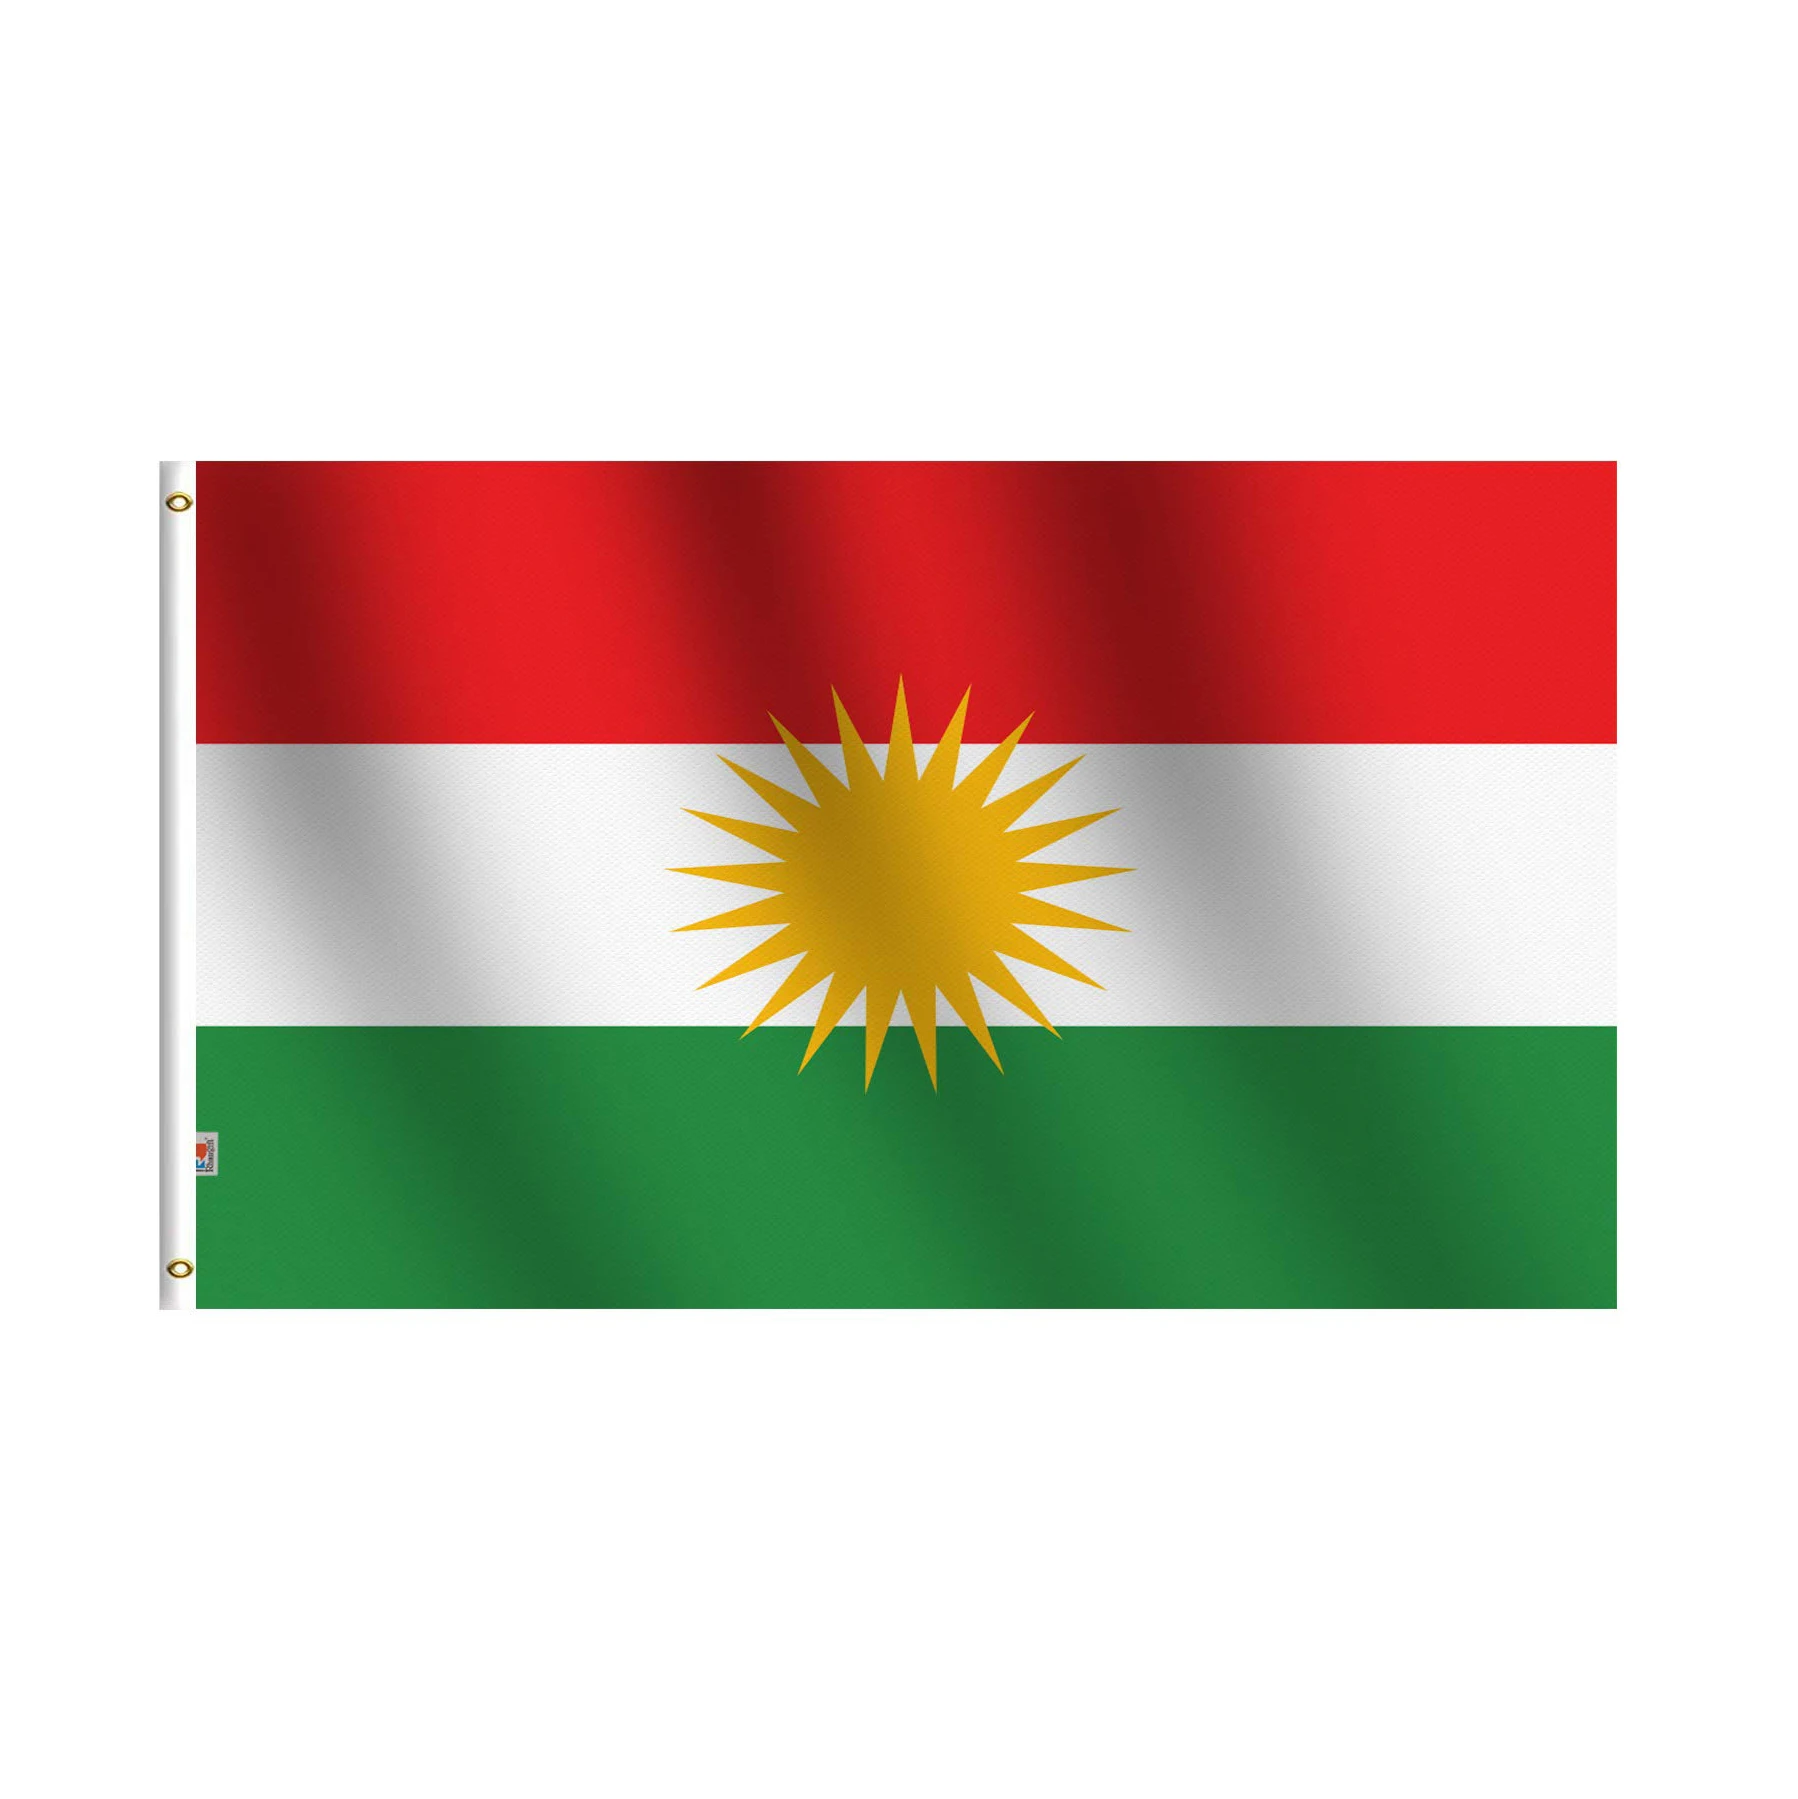 Kurdistan: Kurdistan đang trở thành điểm đến hot cho những ai muốn khám phá vùng đất đầy bí ẩn và sống động. Với cảnh quan đa dạng và văn hóa phong phú, Kurdistan đang thu hút rất nhiều du khách từ khắp nơi trên thế giới. Hãy chiêm ngưỡng những cảnh đẹp tuyệt vời của Kurdistan qua hình ảnh đầy màu sắc và cảm xúc.